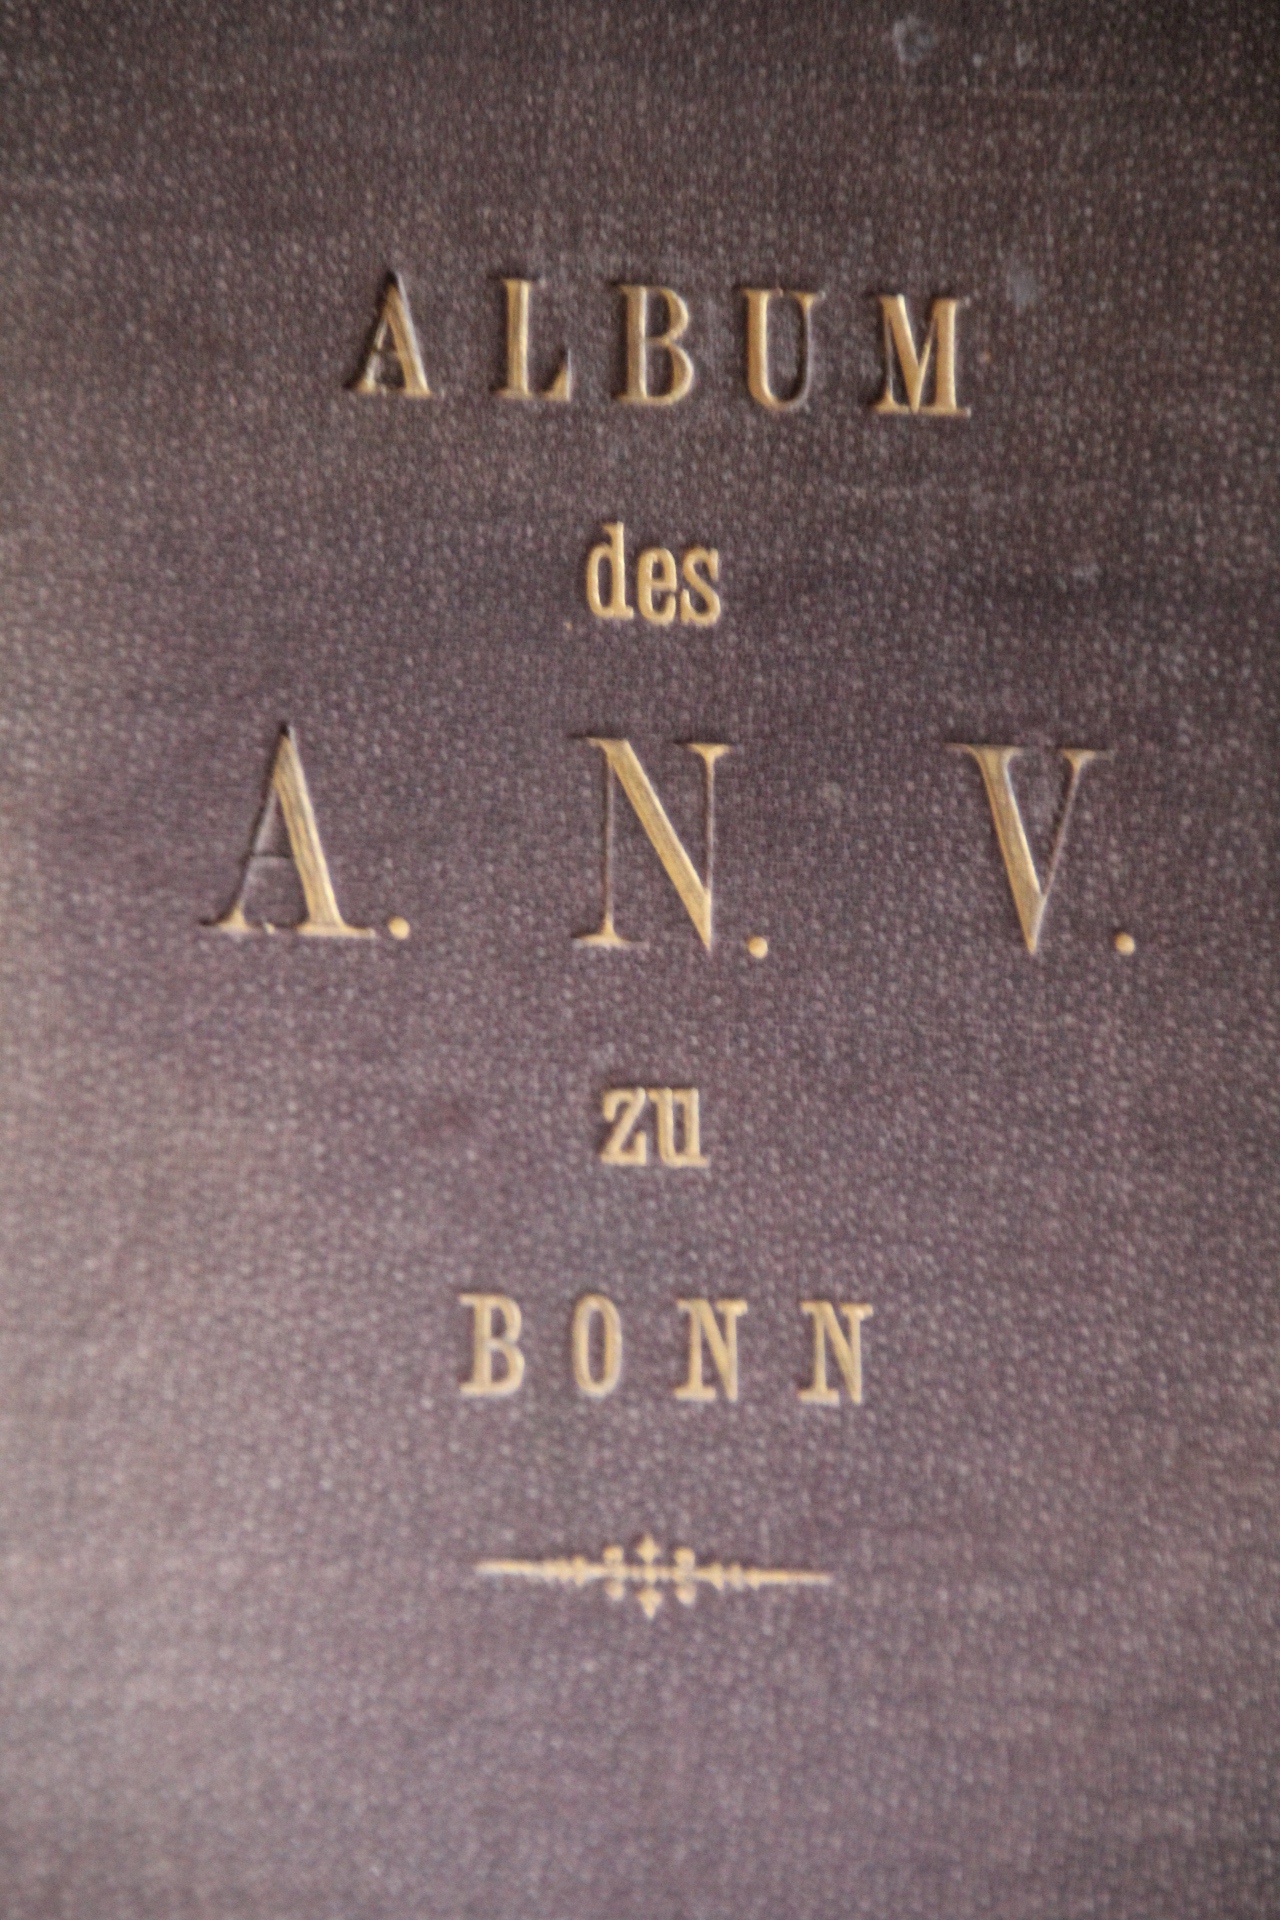 Album des A.N.V zu Bonn 1882